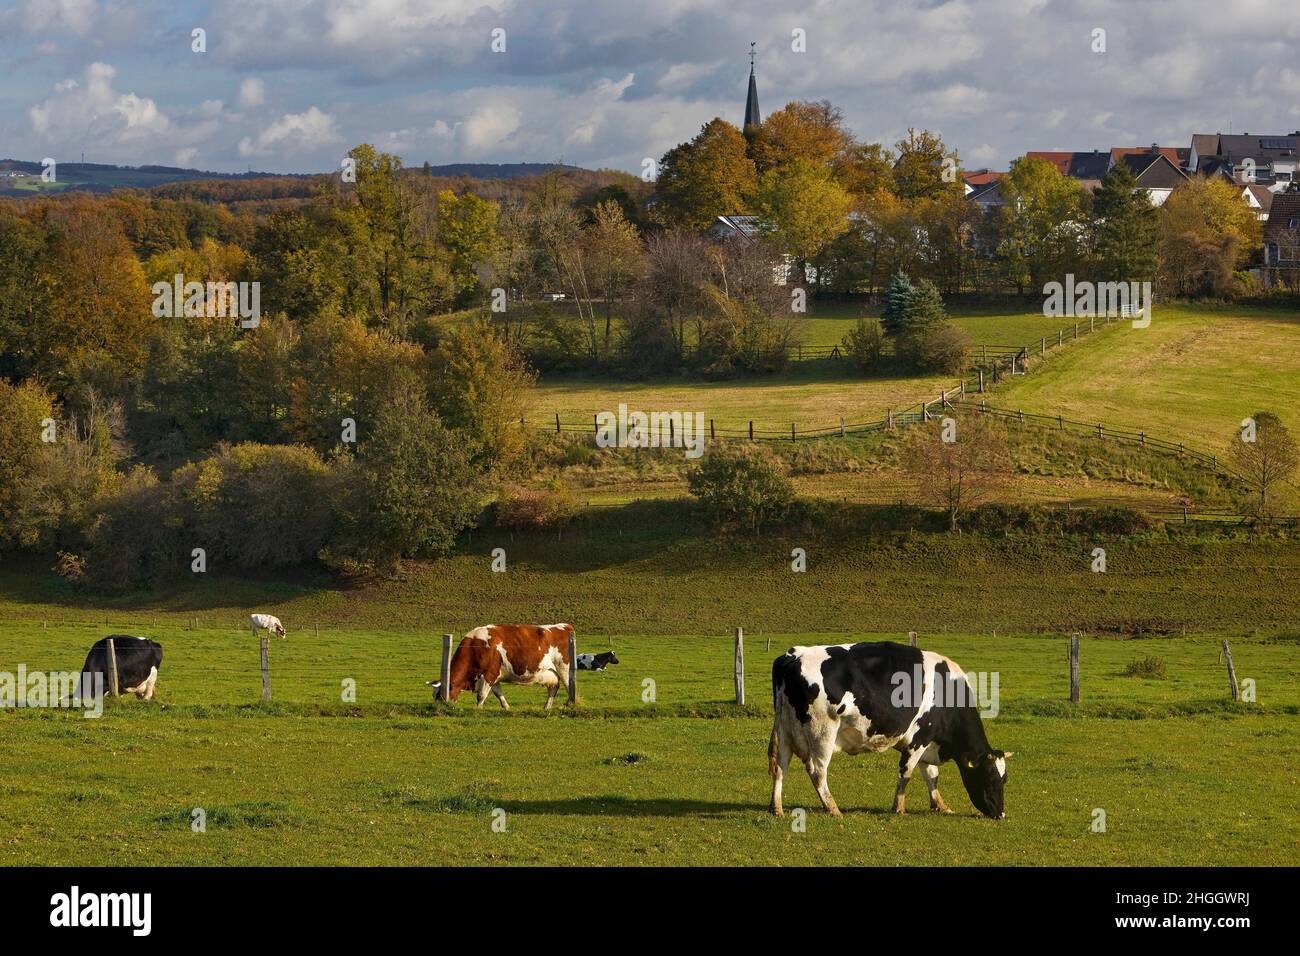 Bovins domestiques (Bos primigenius F. taurus), vaches en pâturage et vue sur Huelscheid, Allemagne, Rhénanie-du-Nord-Westphalie, pays aigre, Schalksmuehle Banque D'Images